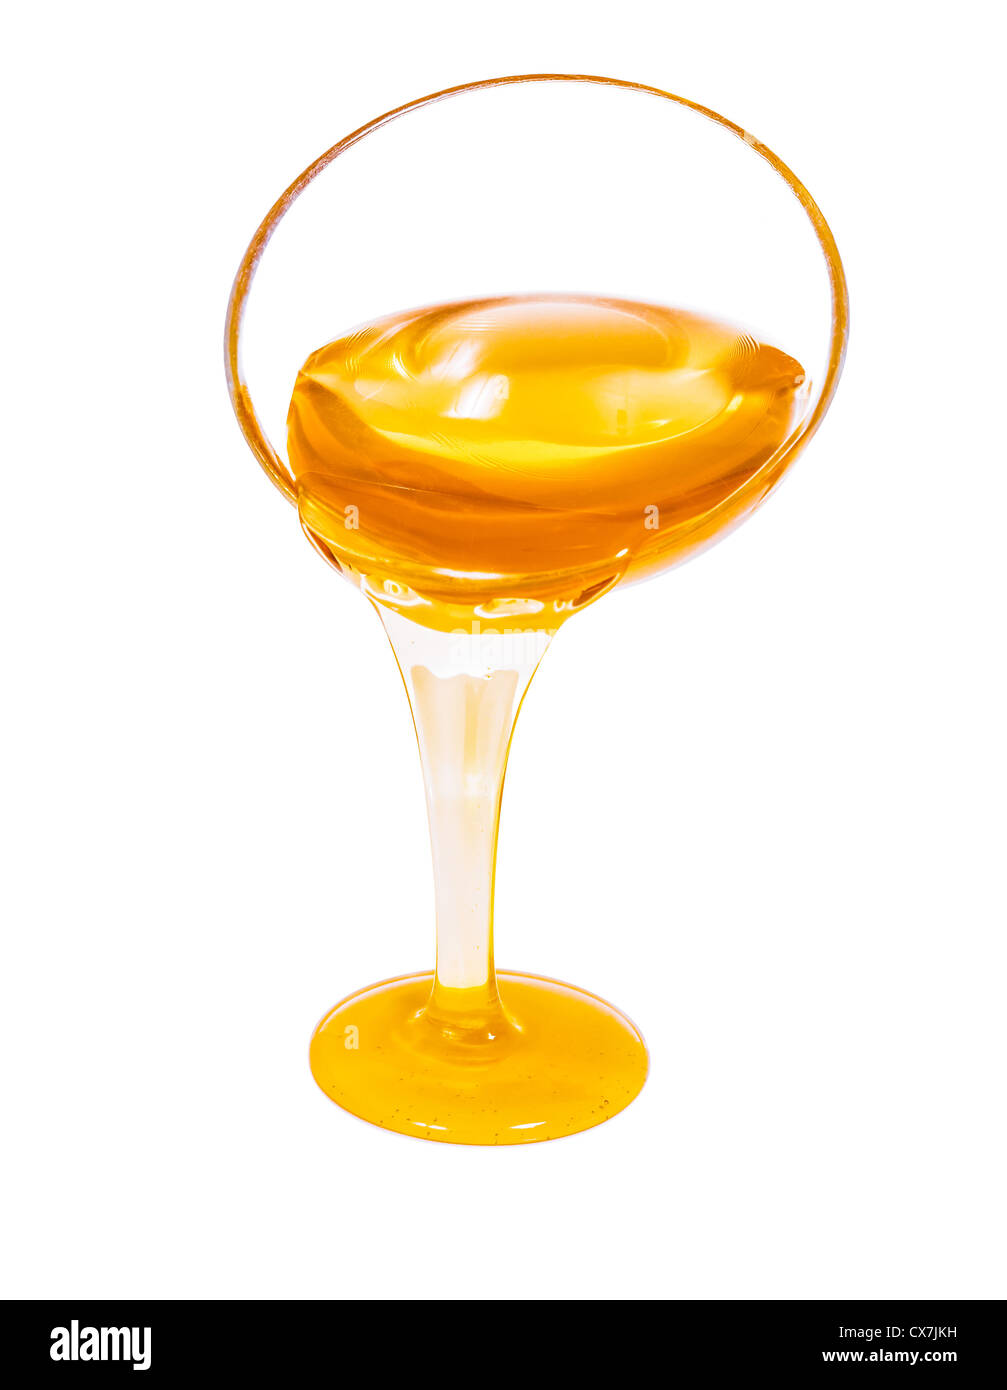 Le débit du miel à partir du verre tasse isolated on white Banque D'Images